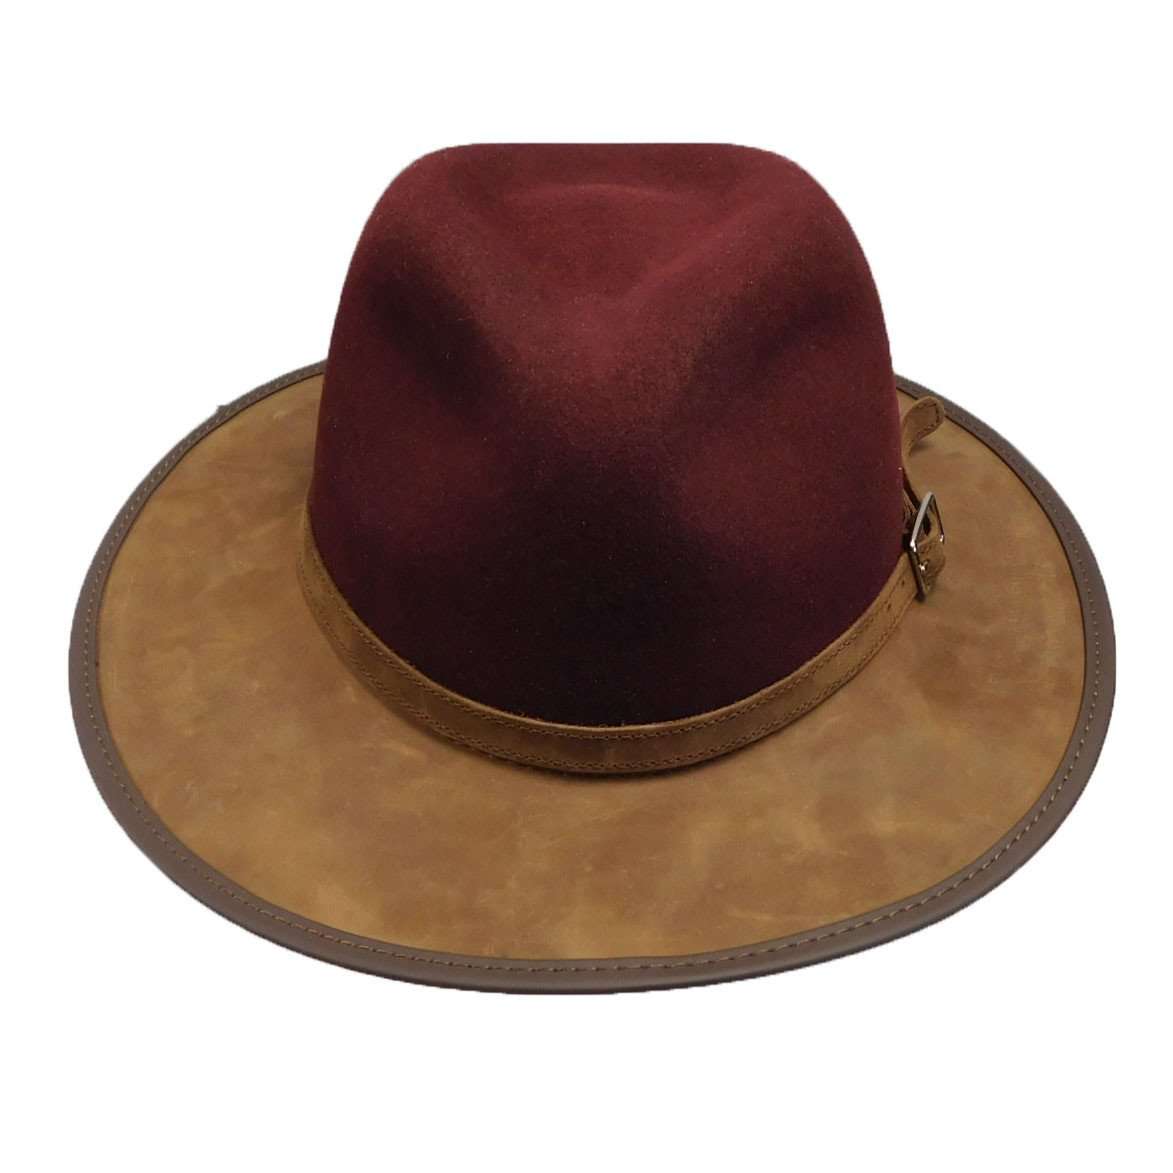 Summit Safari Wool and Leather Hat -Burgundy Safari Hat Head'N'Home Hats    